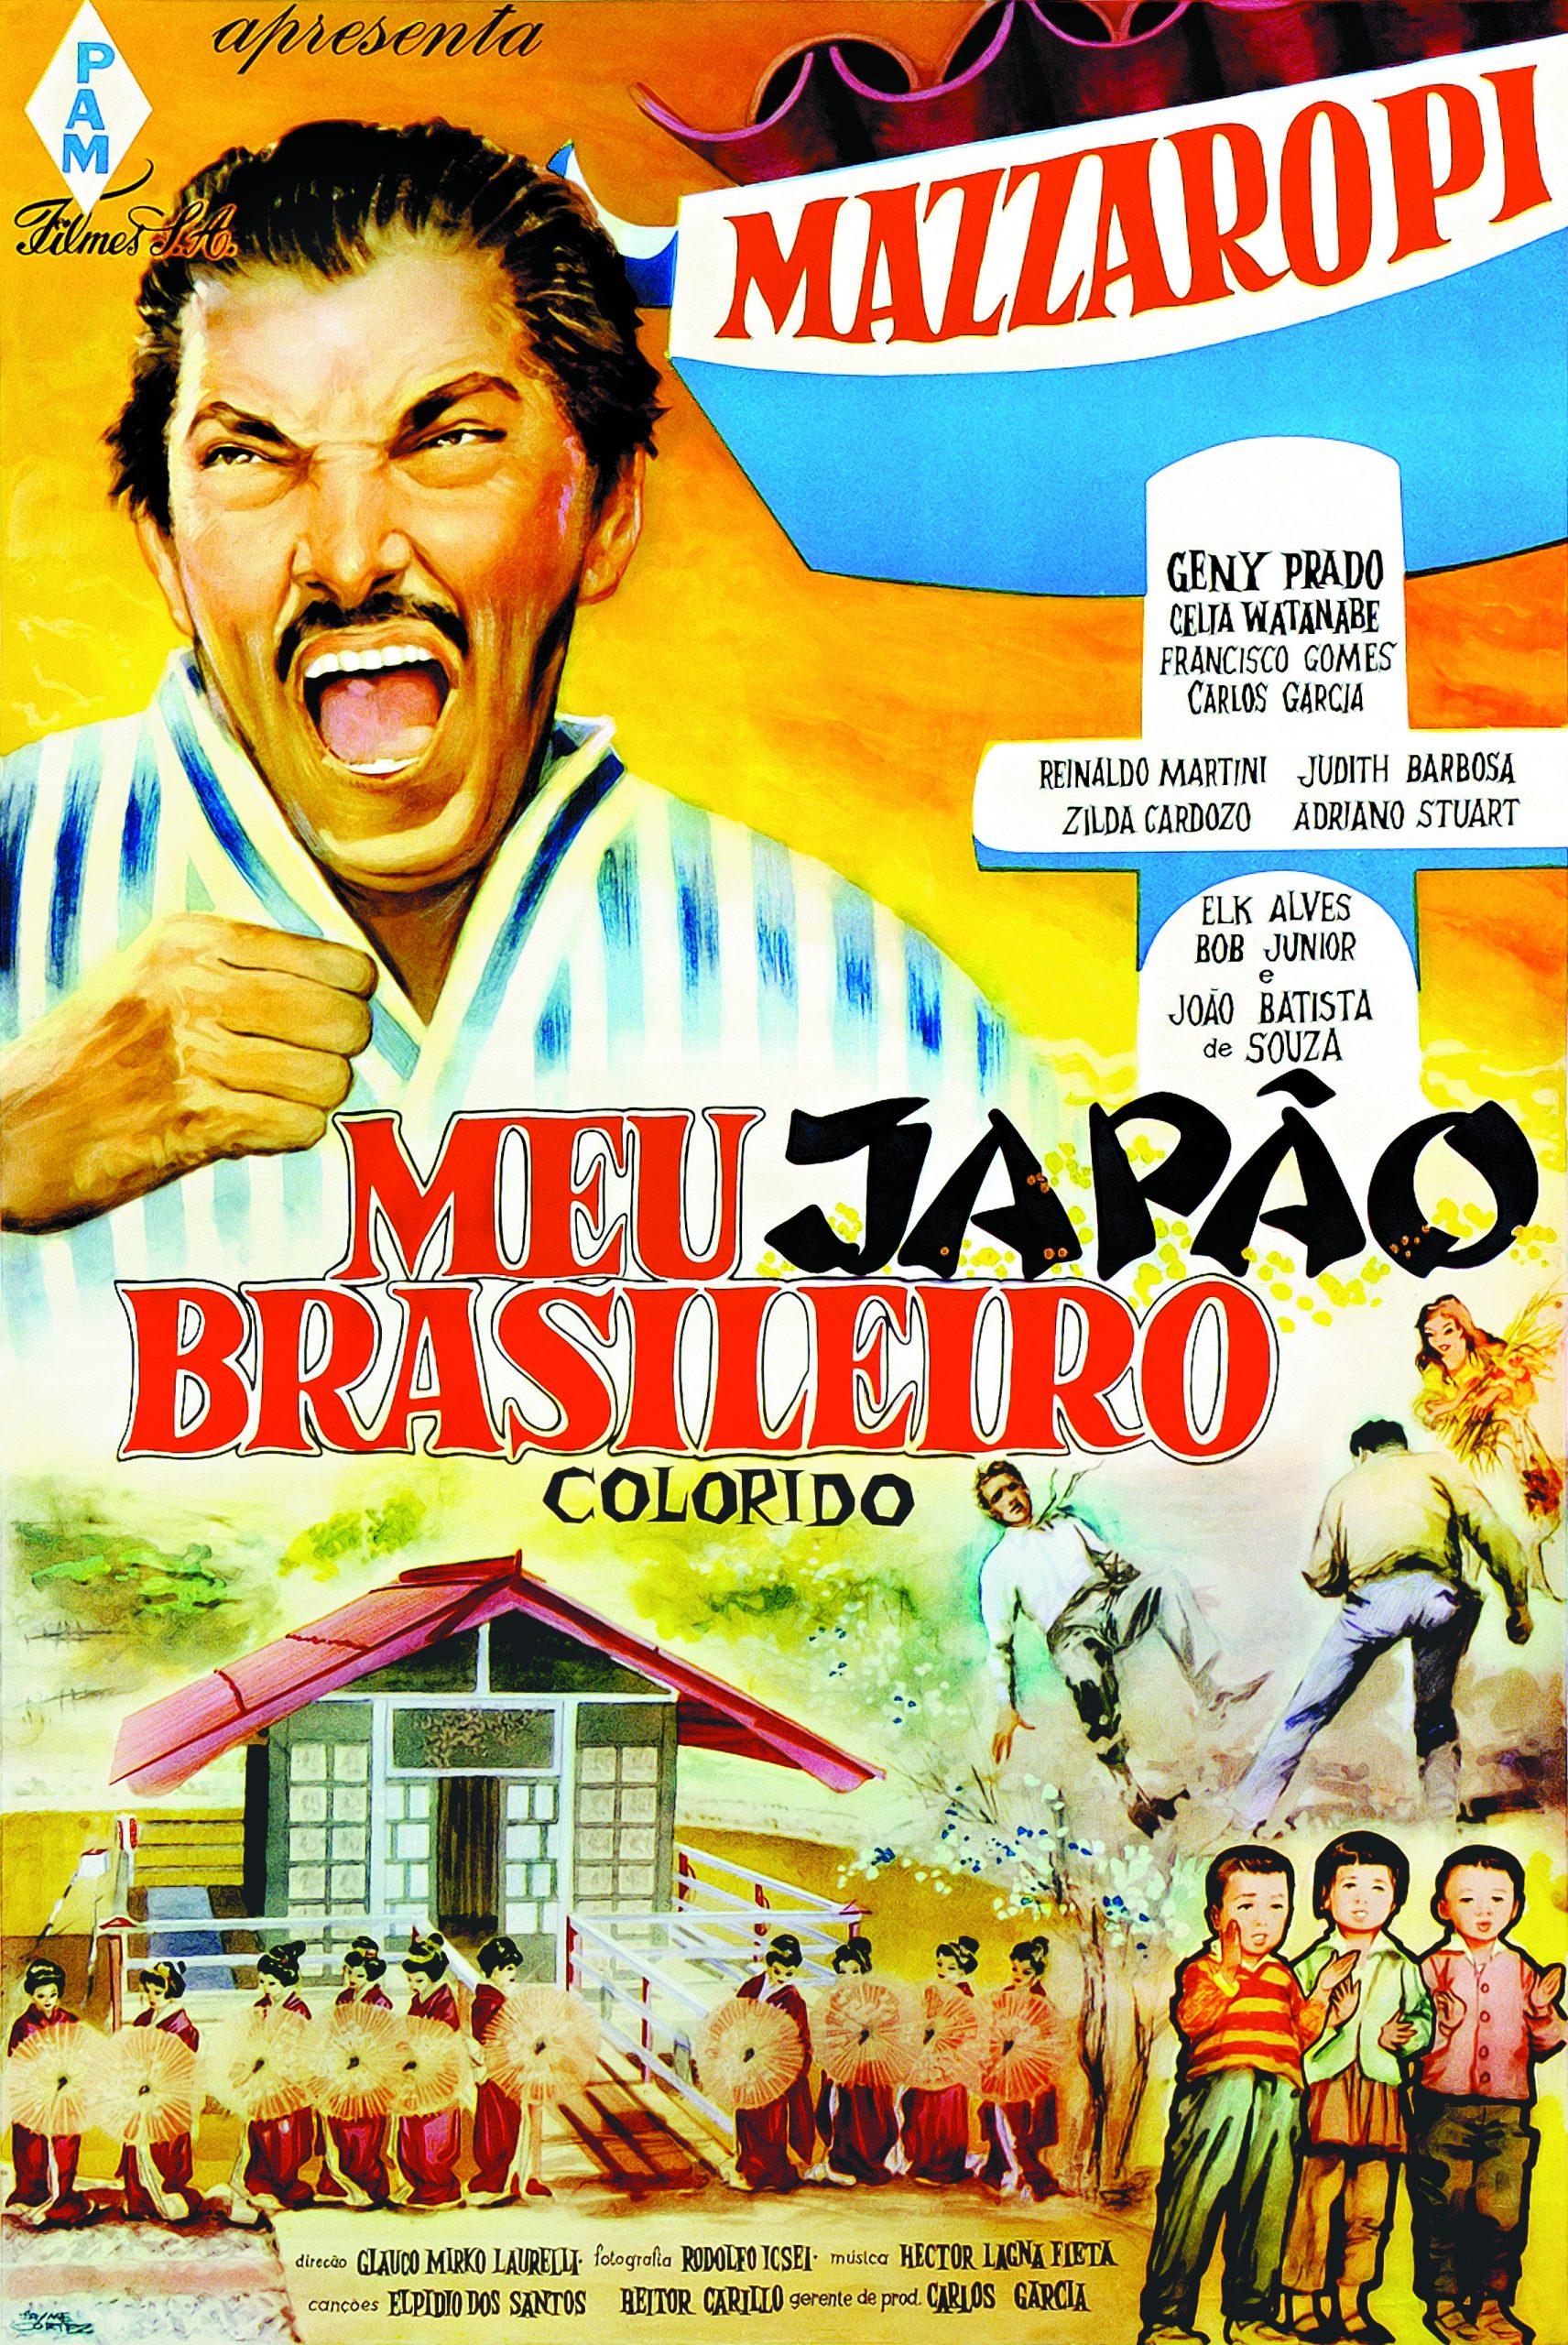 Mazzaropi Coleção Meu Japão Brasileiro - Filme Comédia Multisom